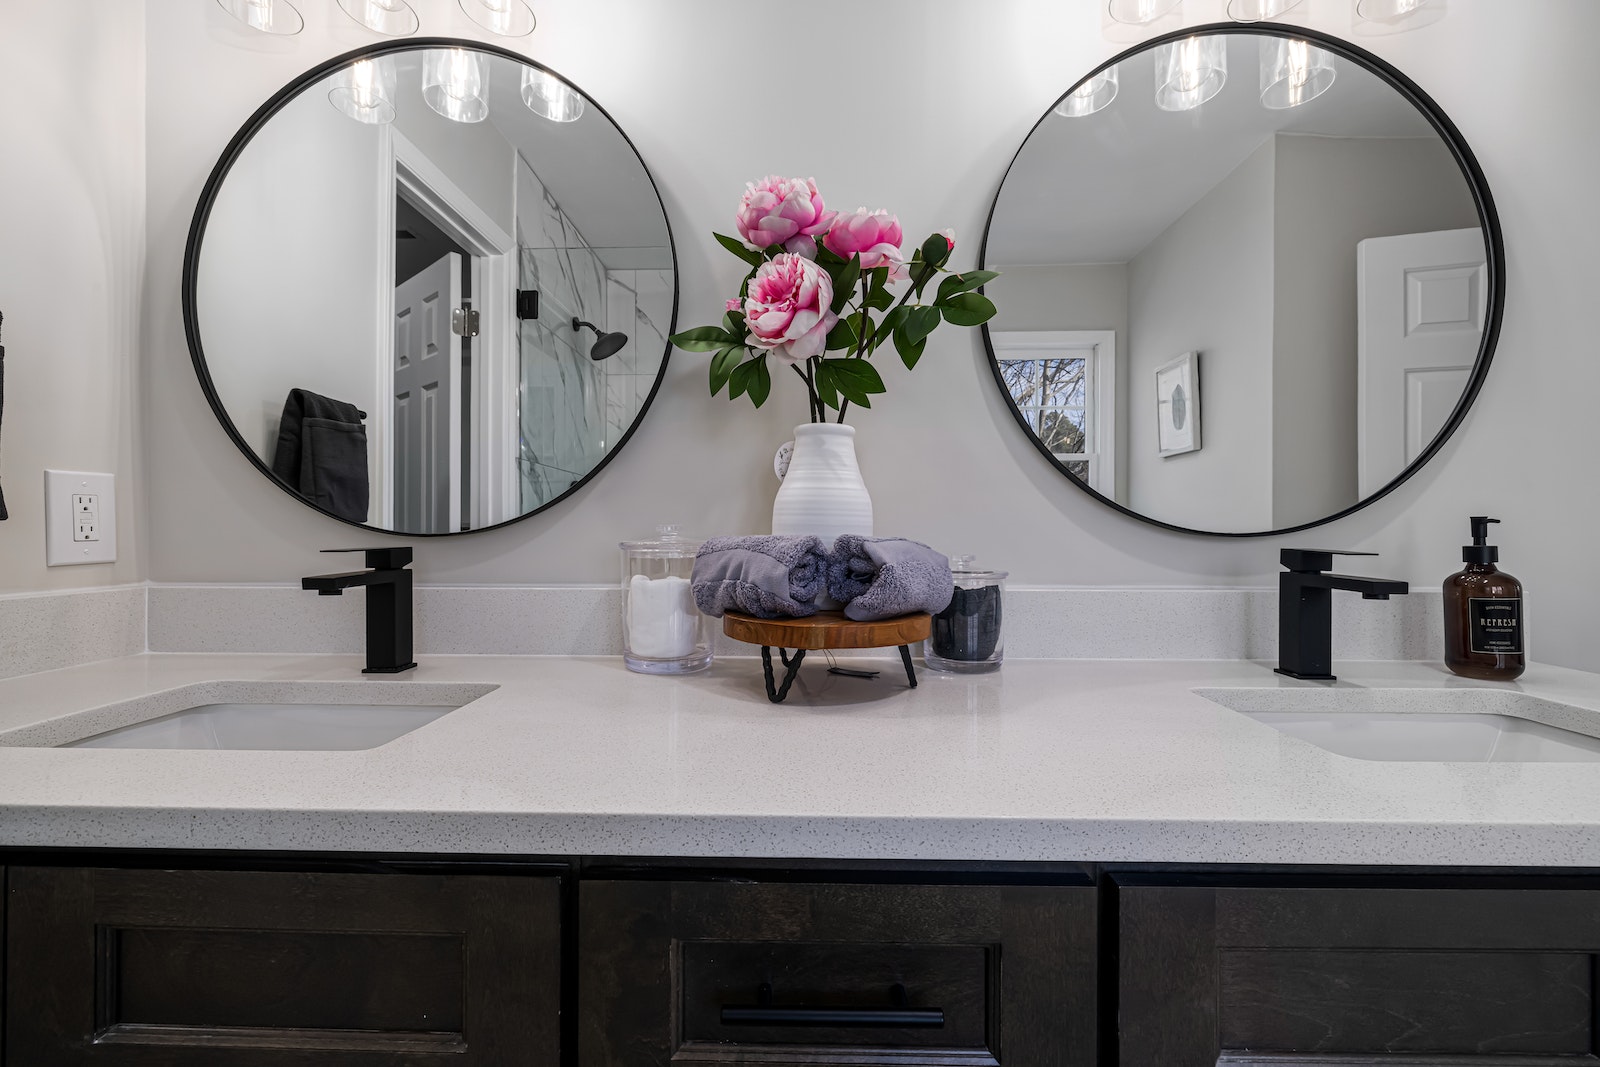 Espejos redondos son una opción elegante, funcional y versátil